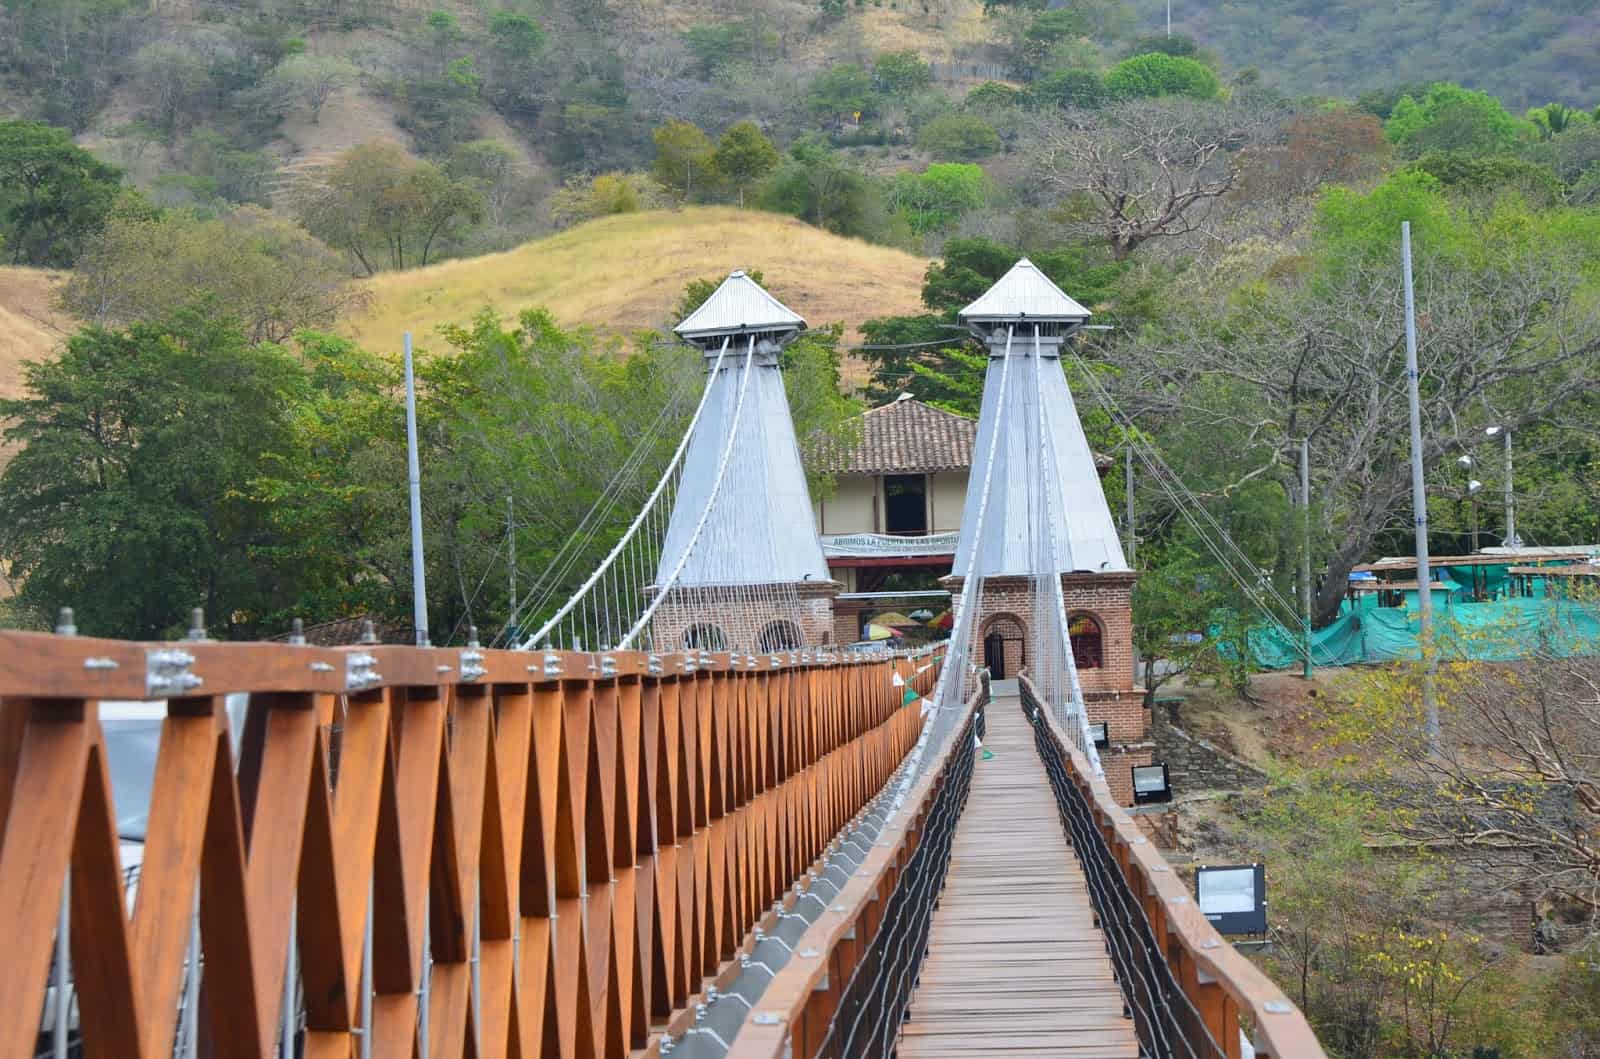 Puente de Occidente in Santa Fe de Antioquia, Colombia